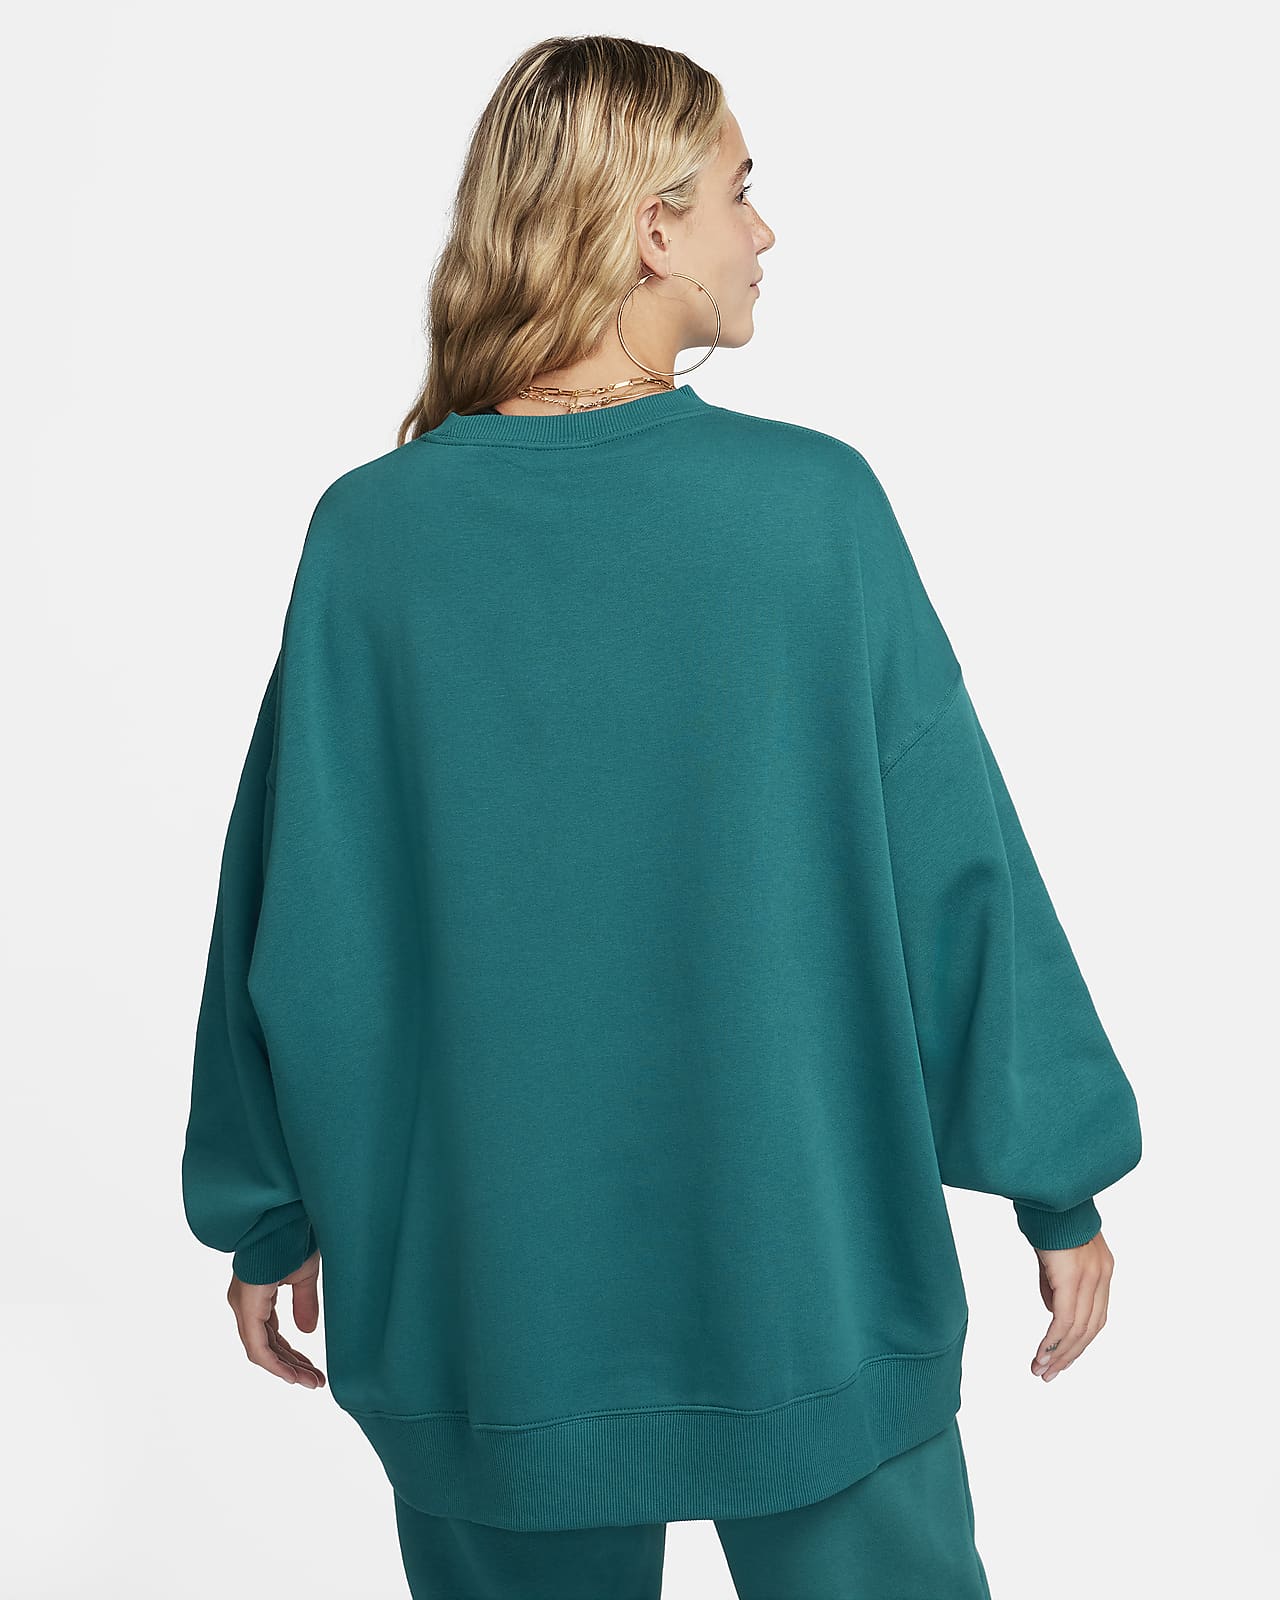 Nike Women's Sportswear Heritage Fleece Sweatshirt, Coral, X-Small